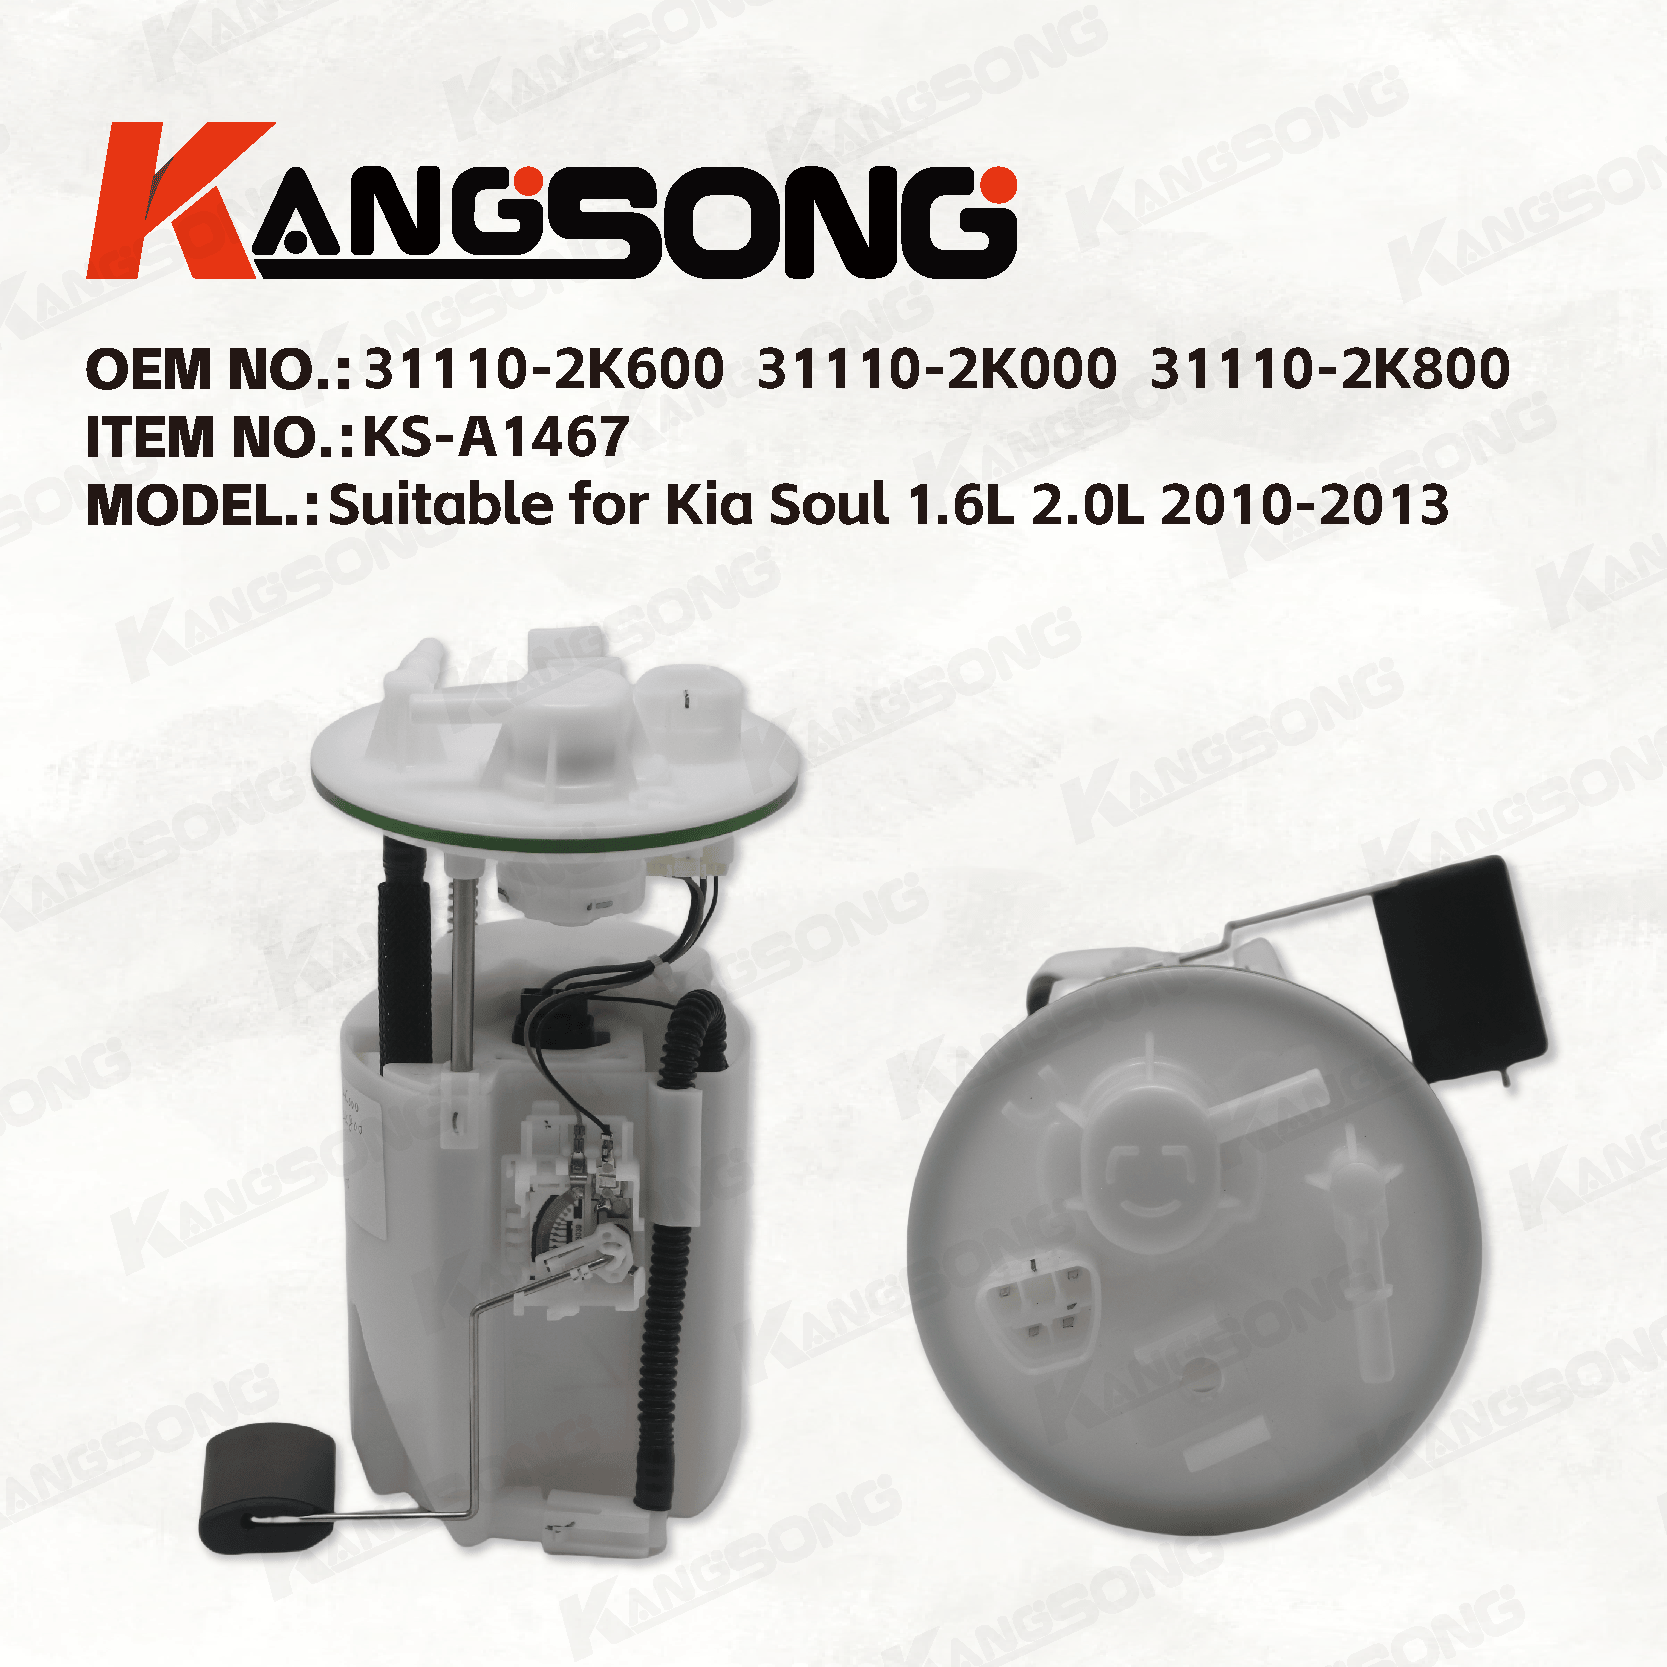 Applicable to Kia Soul 1.6L 2.0L 2010-2013/ 31110-2K600 31110-2K000 31110-2K800 /Fuel Pump Assembly/KSA1467